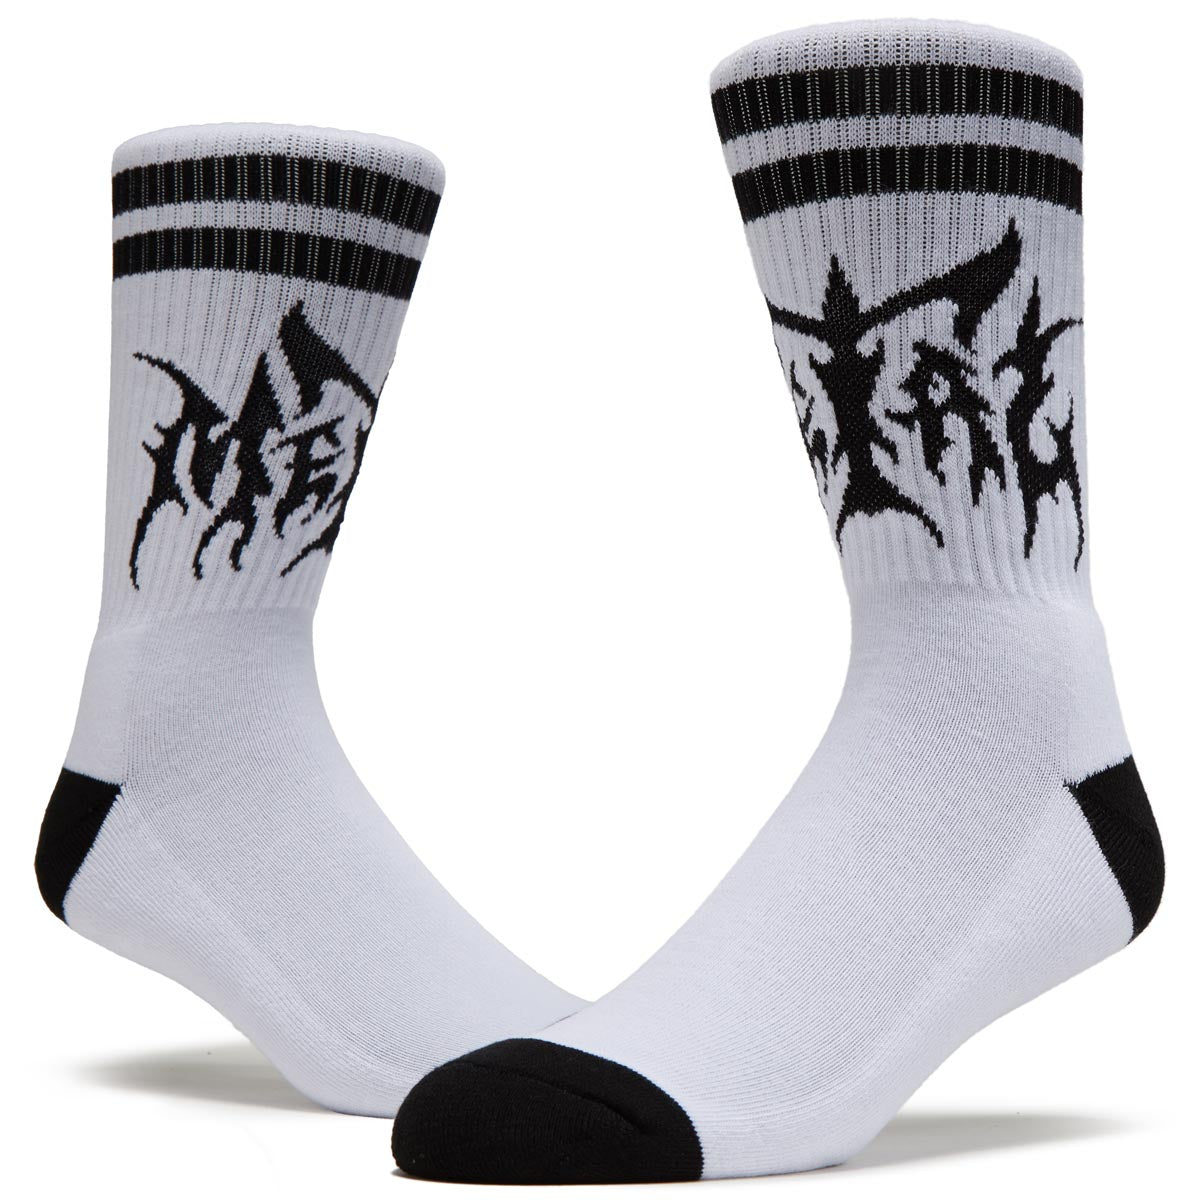 Metal Hesher Socks - White/Black image 2